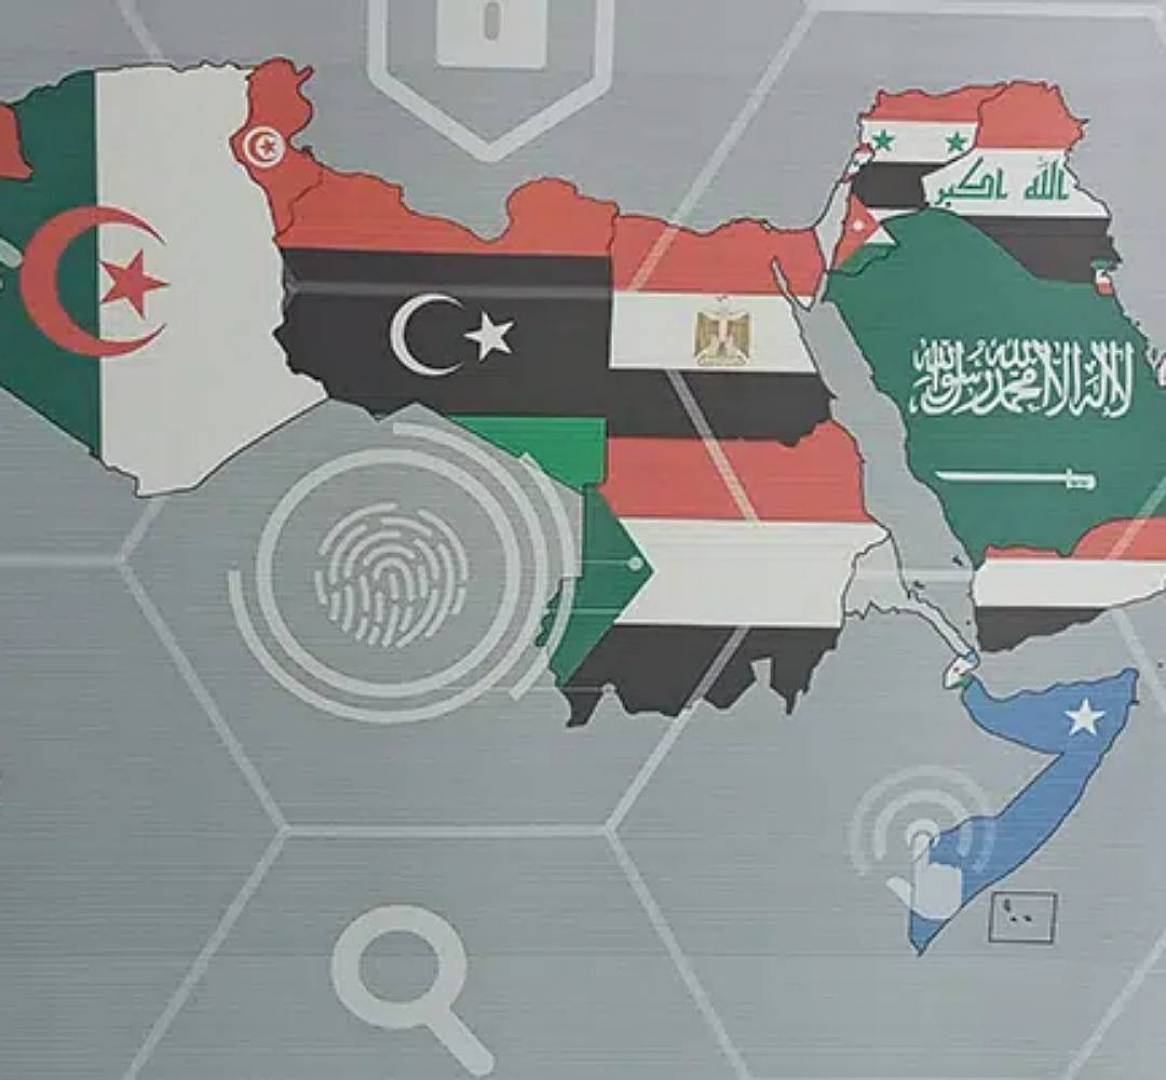 وفد جزائري ينسحب من ندوة قومية ويغادر تونس بسبب خريطة فلسطين والصحراء